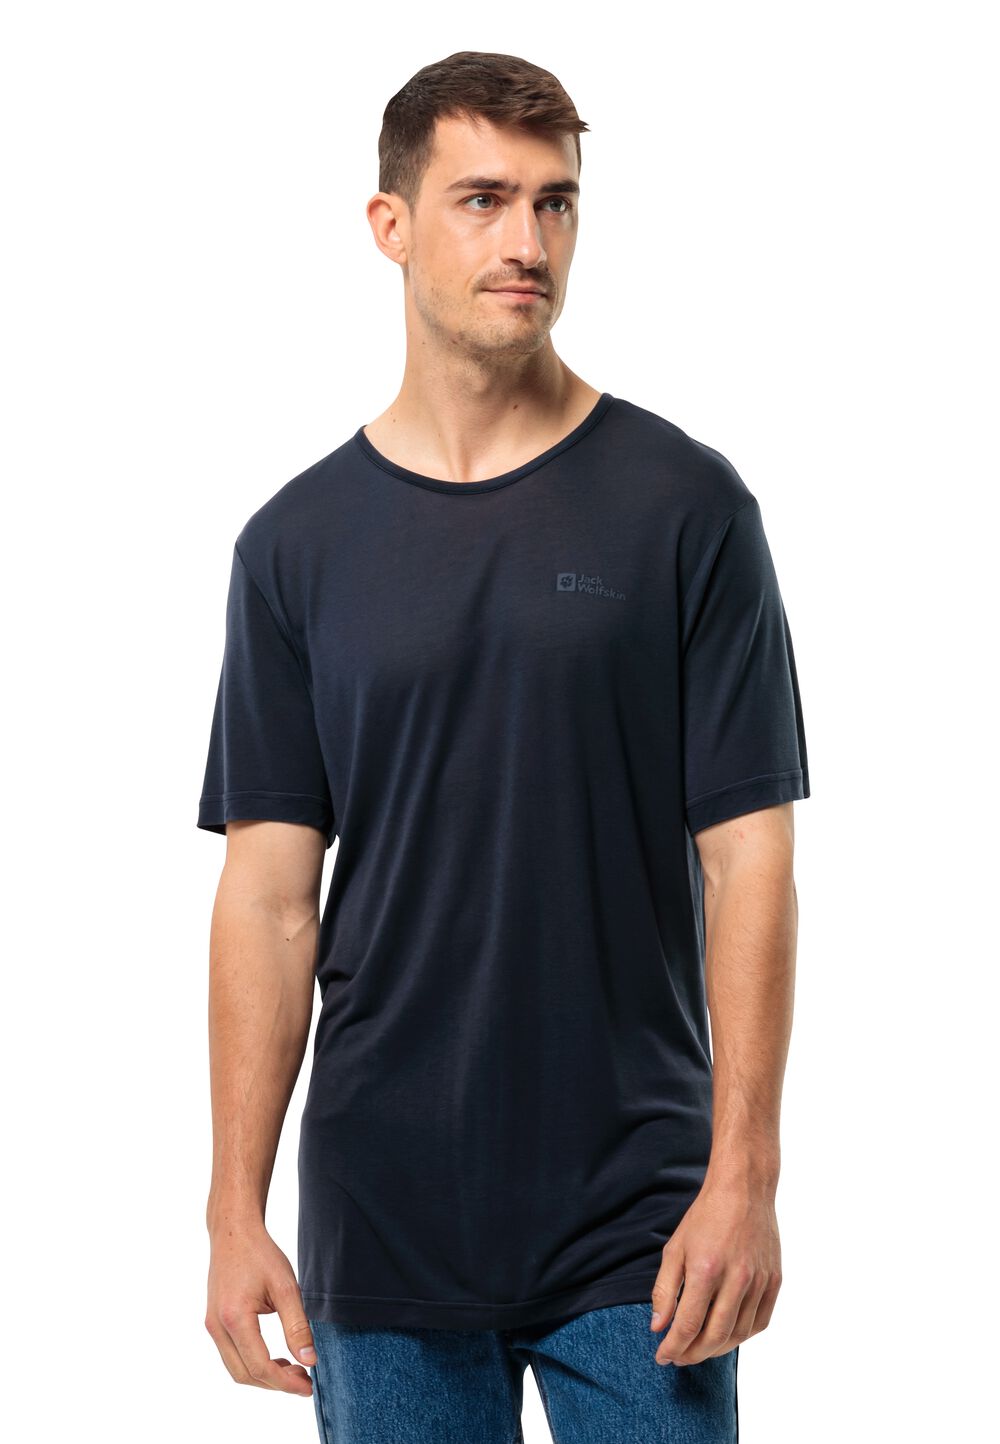 Jack Wolfskin Mola T-Shirt Men Functioneel shirt Heren 3XL blue night blue